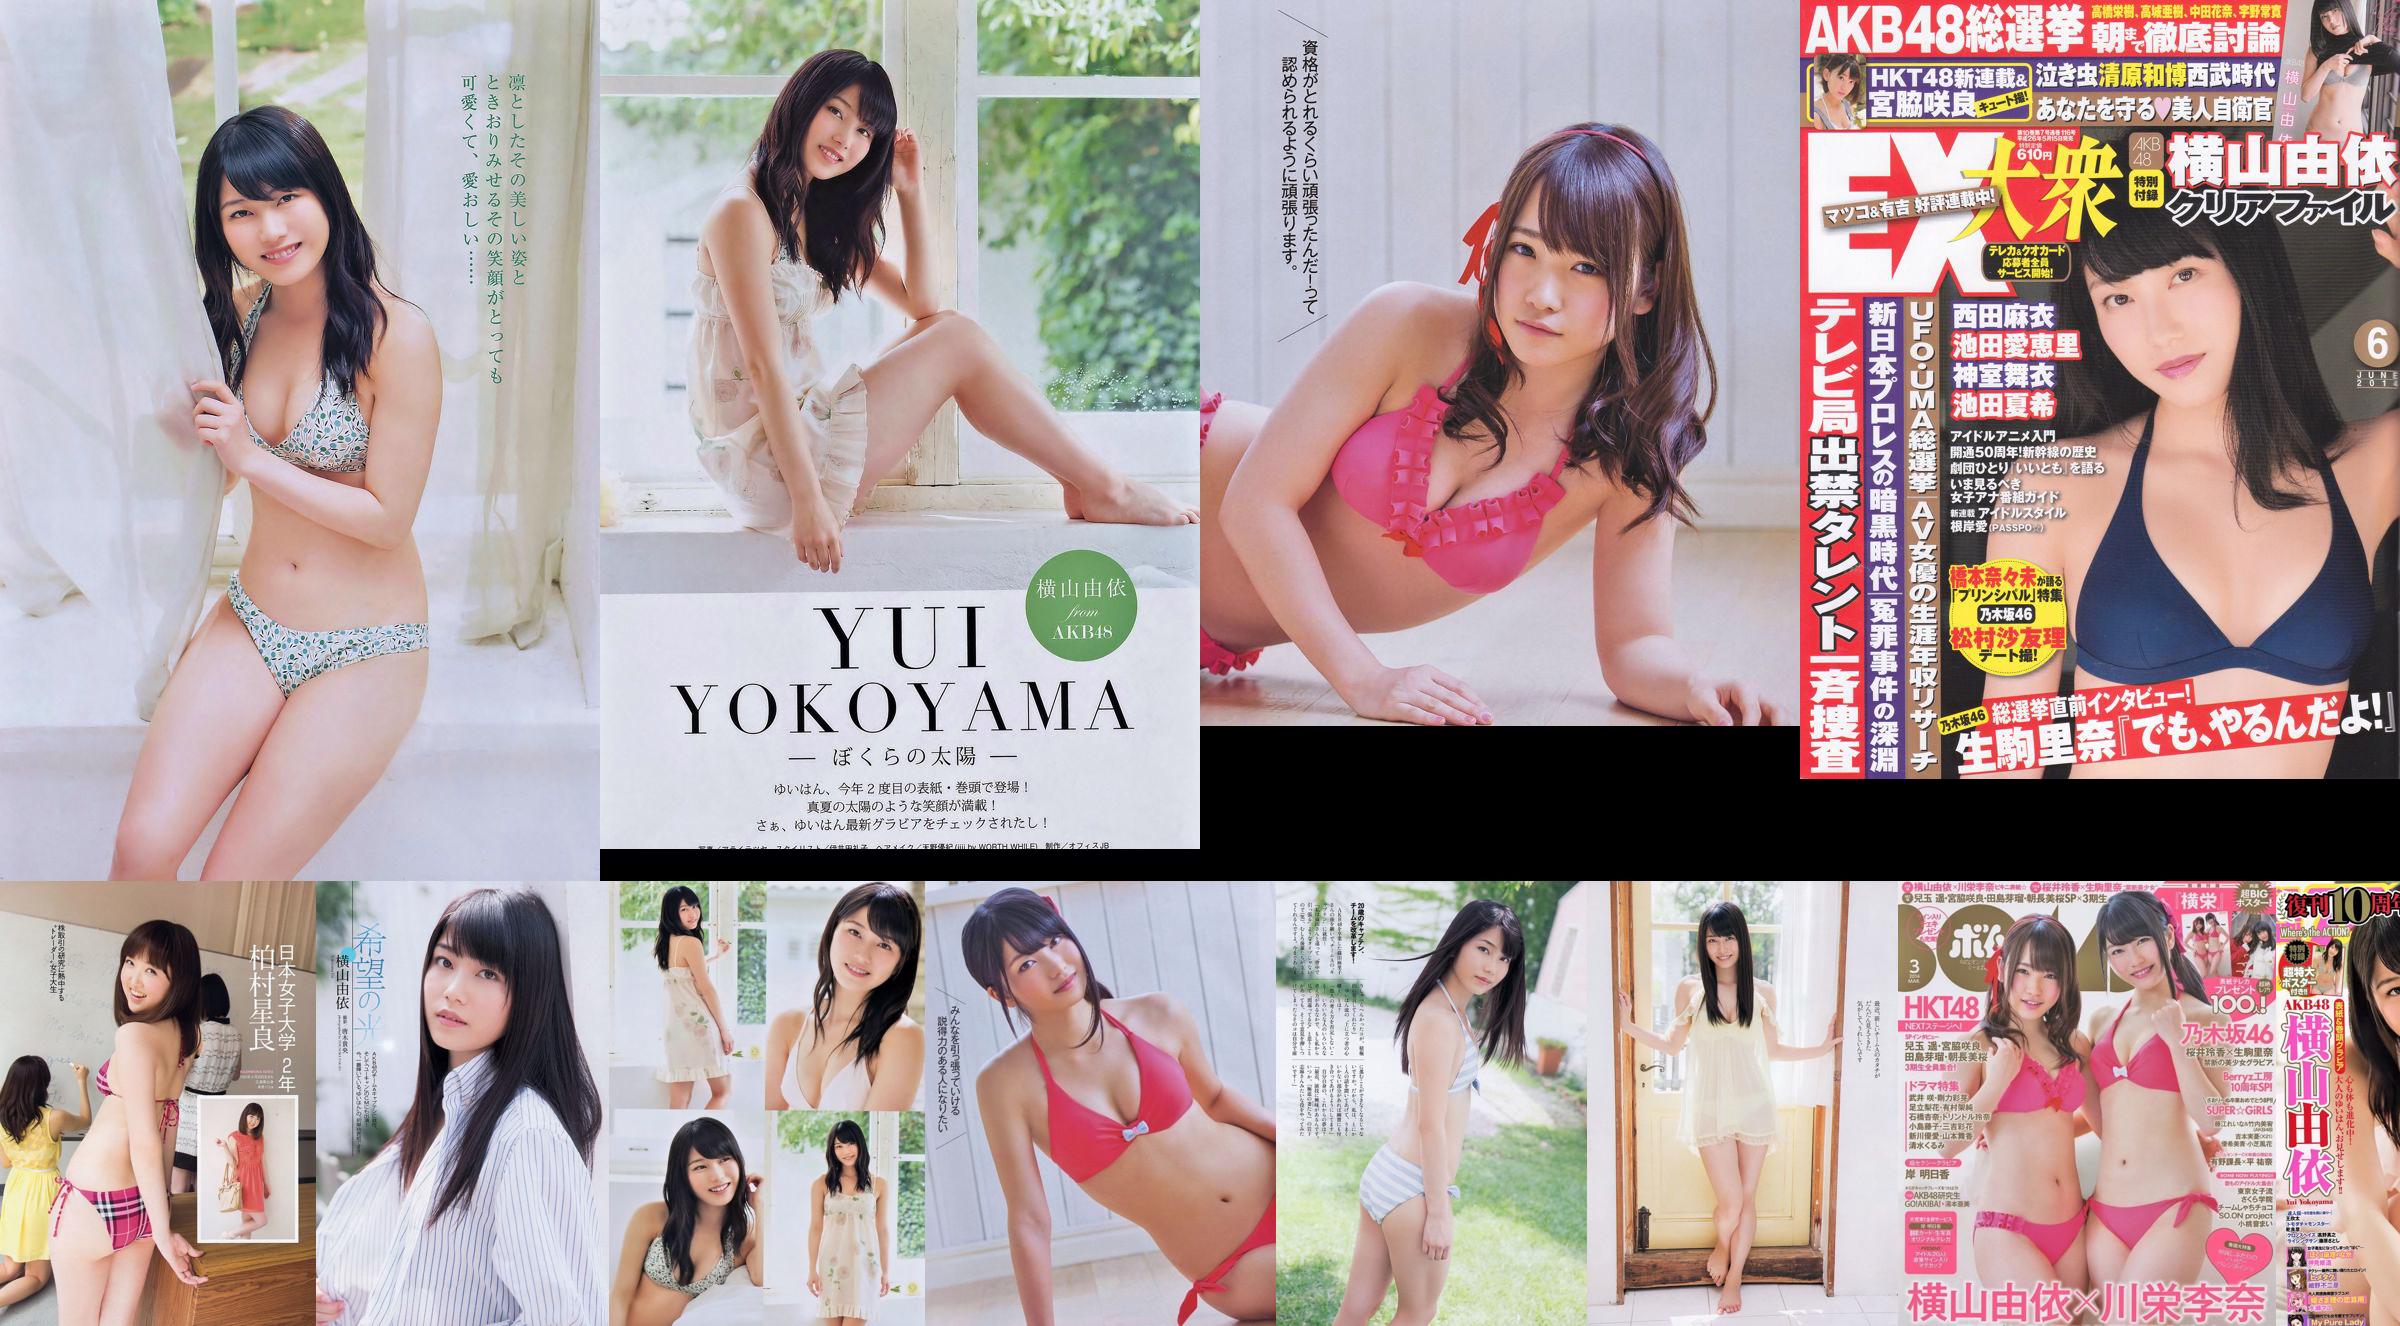 Momoiro Clover Z Yui Yokoyama Yua Shinkawa Mio Uema Anri Sugihara Kumi Yagami [Playboy settimanale] 2013 No.20 Foto Moshi No.b5ed5c Pagina 11